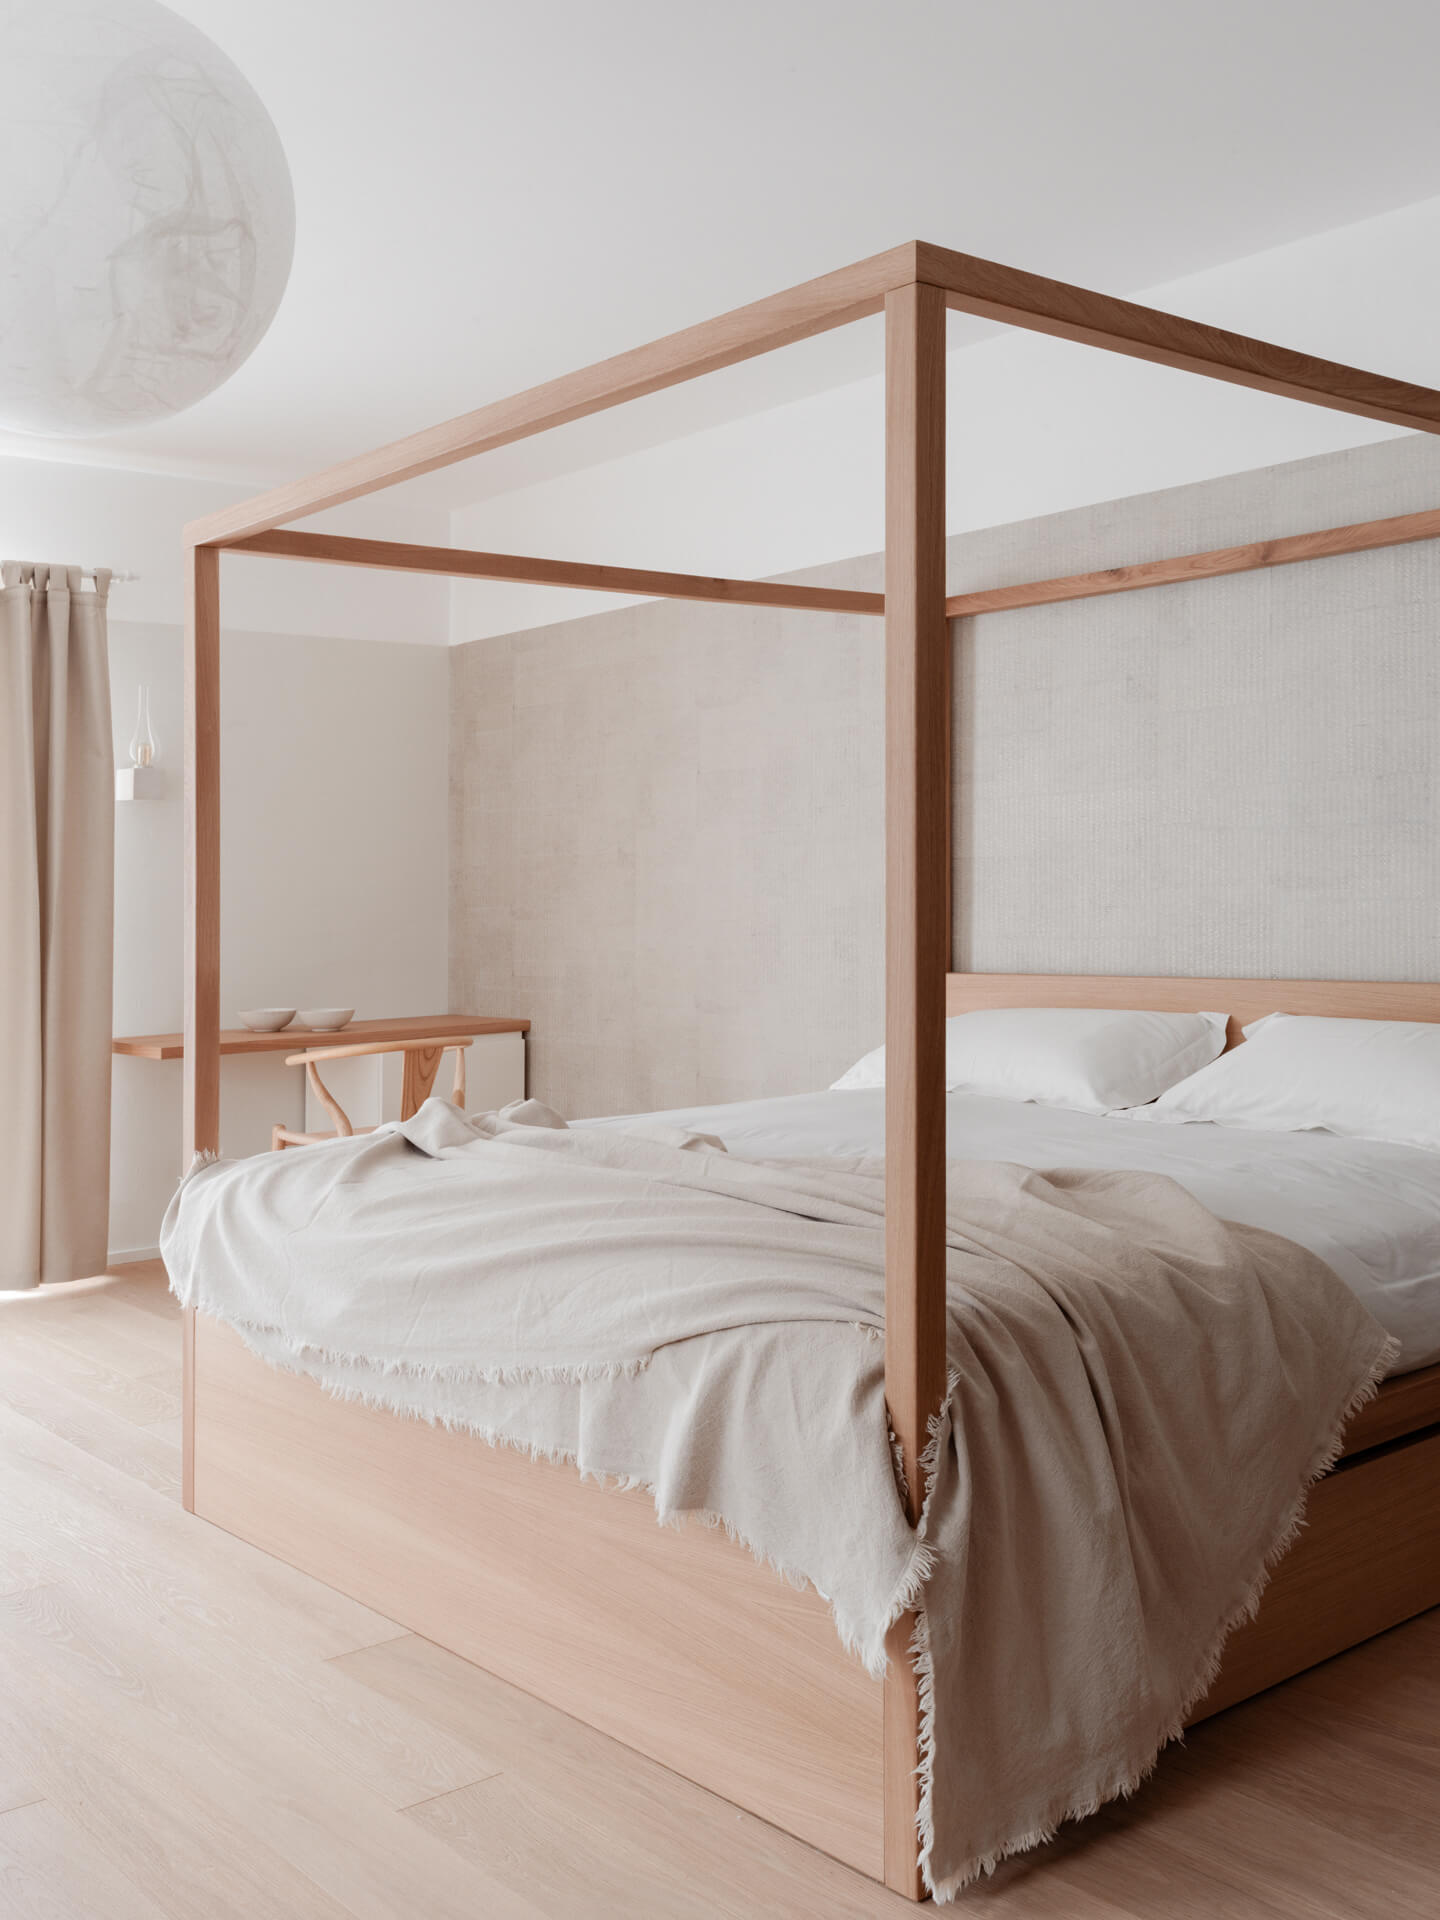 Terra del Sole suites - Hotel Design - Letto a baldacchino